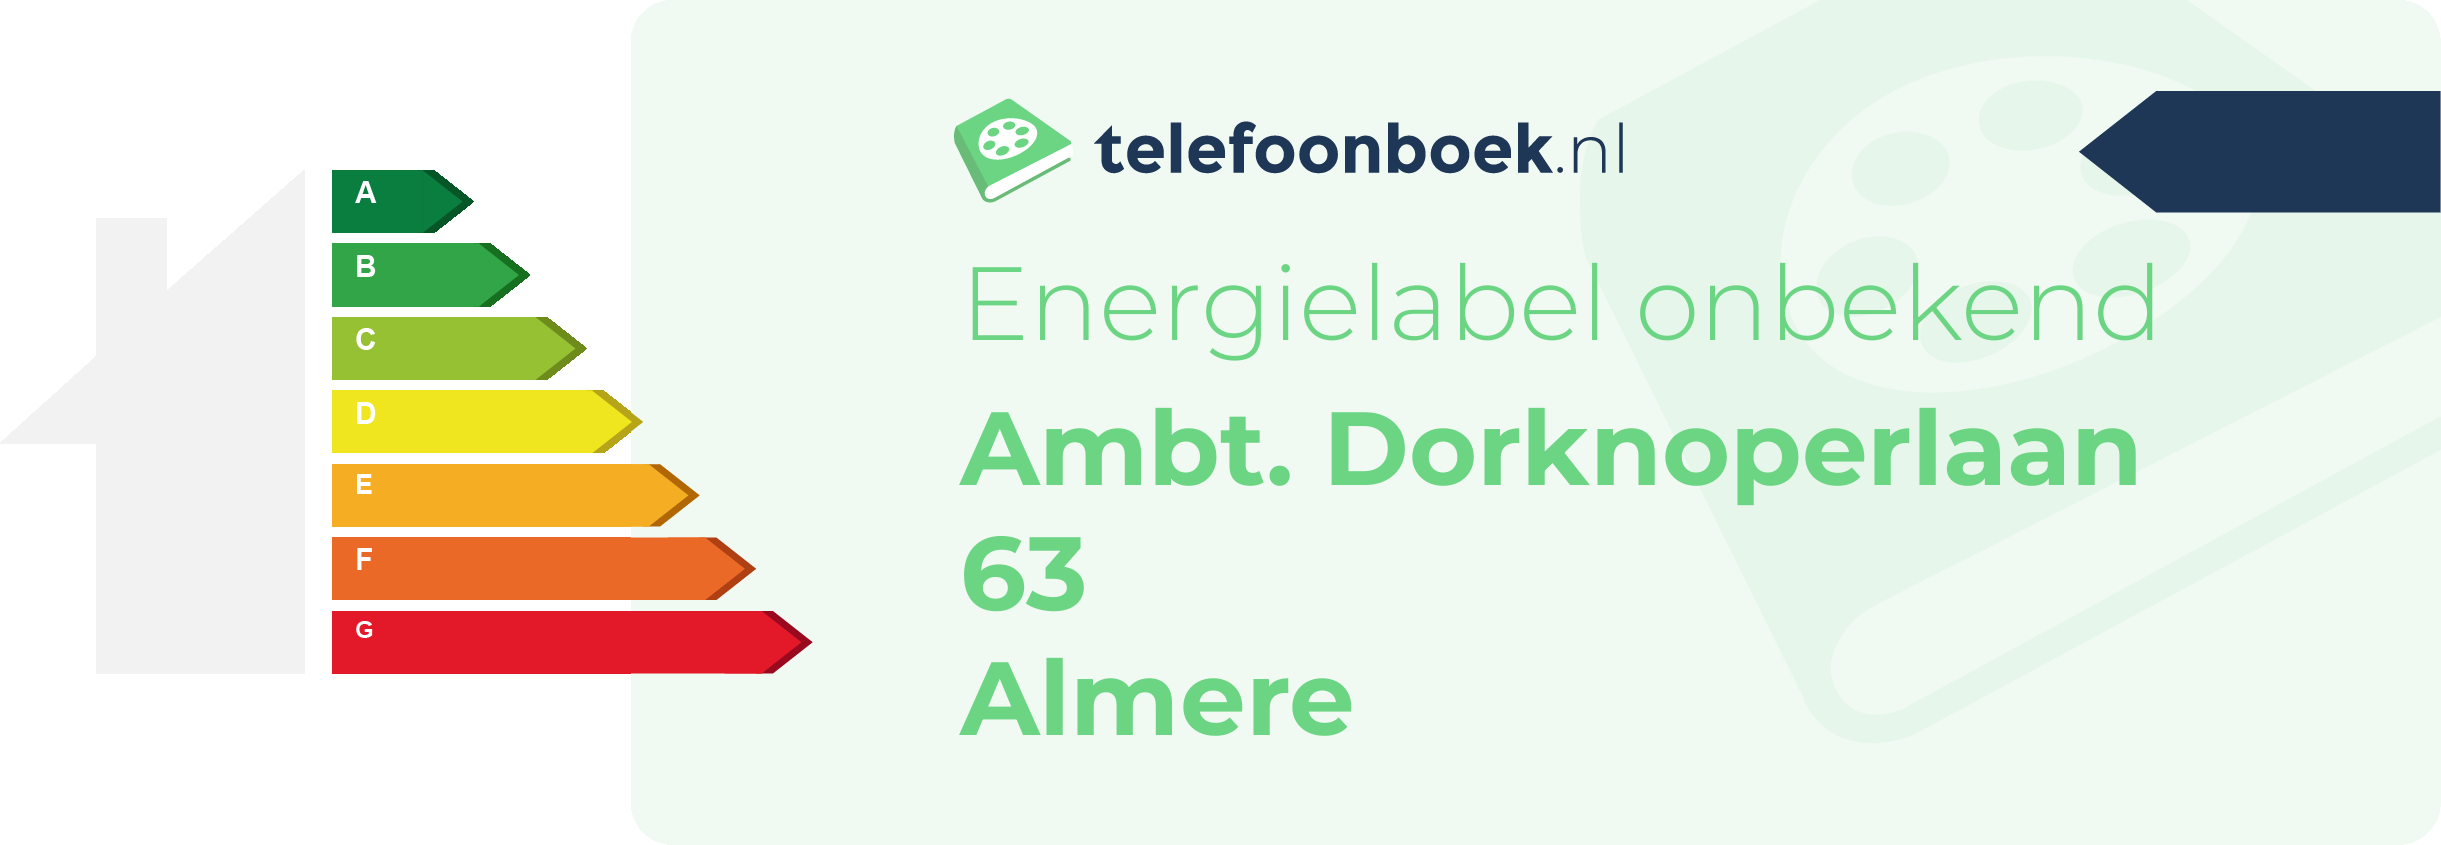 Energielabel Ambt. Dorknoperlaan 63 Almere